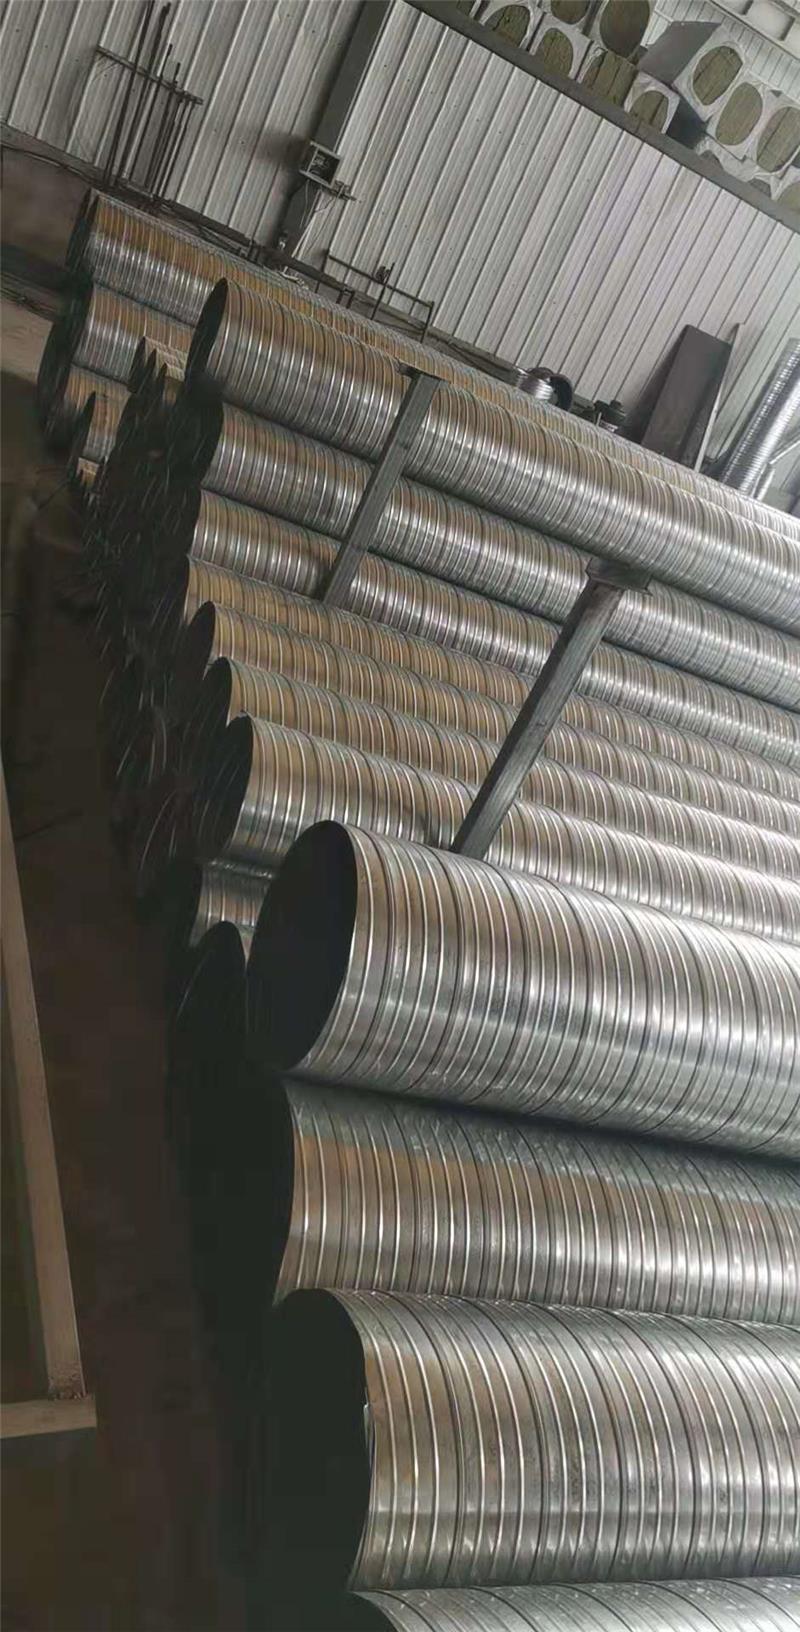 大批量螺旋风管加工-滨州螺旋风管-宏宾铁业螺旋风管